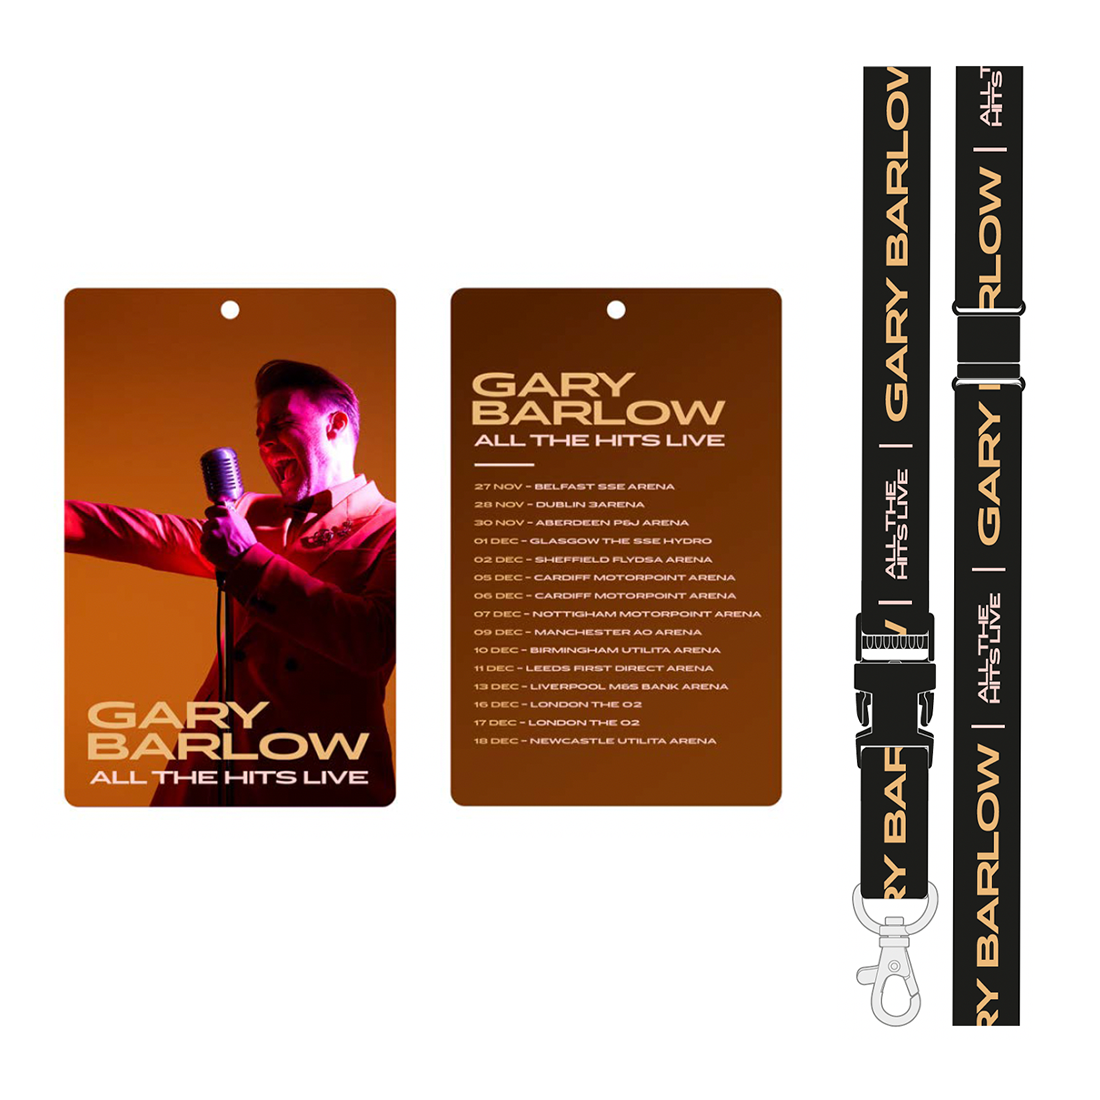 Gary Barlow - All The Hits Lanyard and Laminate